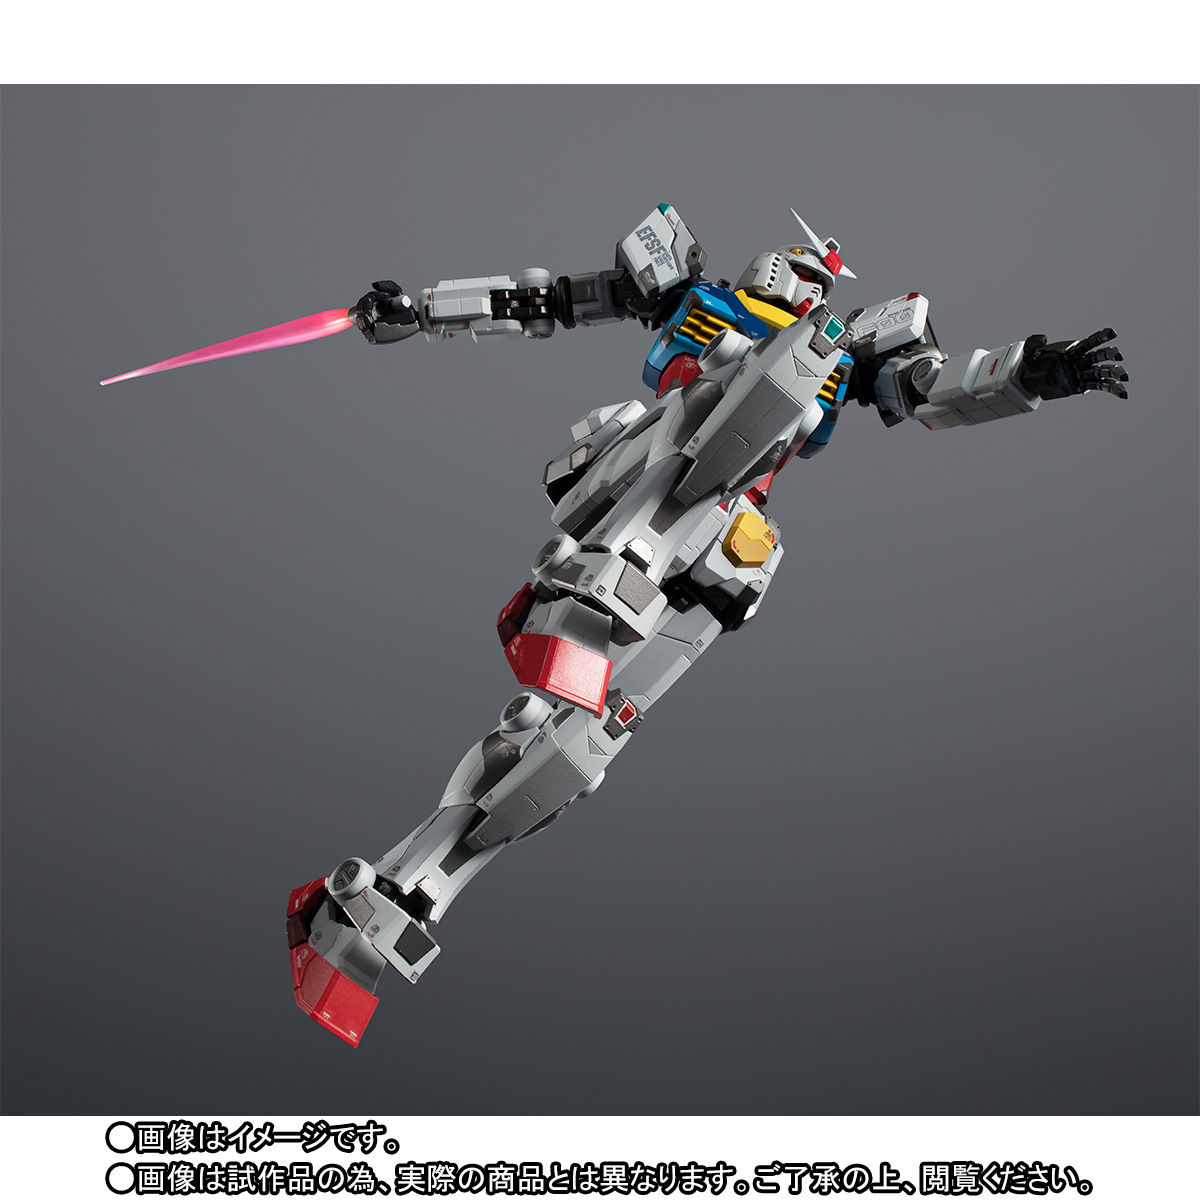 【限定販売】超合金×GUNDAM FACTORY YOKOHAMA『RX-78F00 GUNDAM』可動フィギュア-007